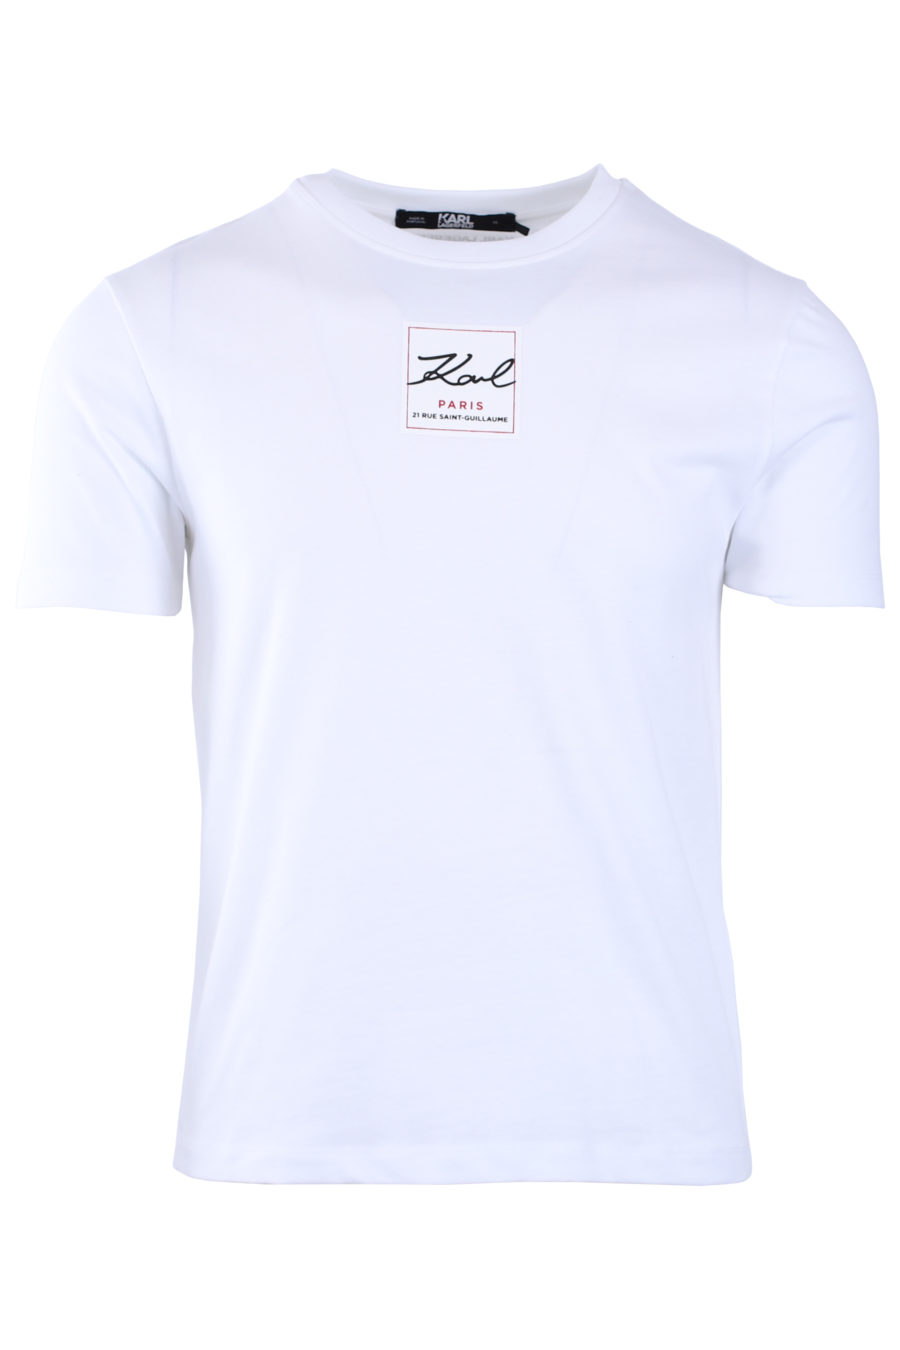 T-shirt unisexe blanc avec logo - IMG 9029